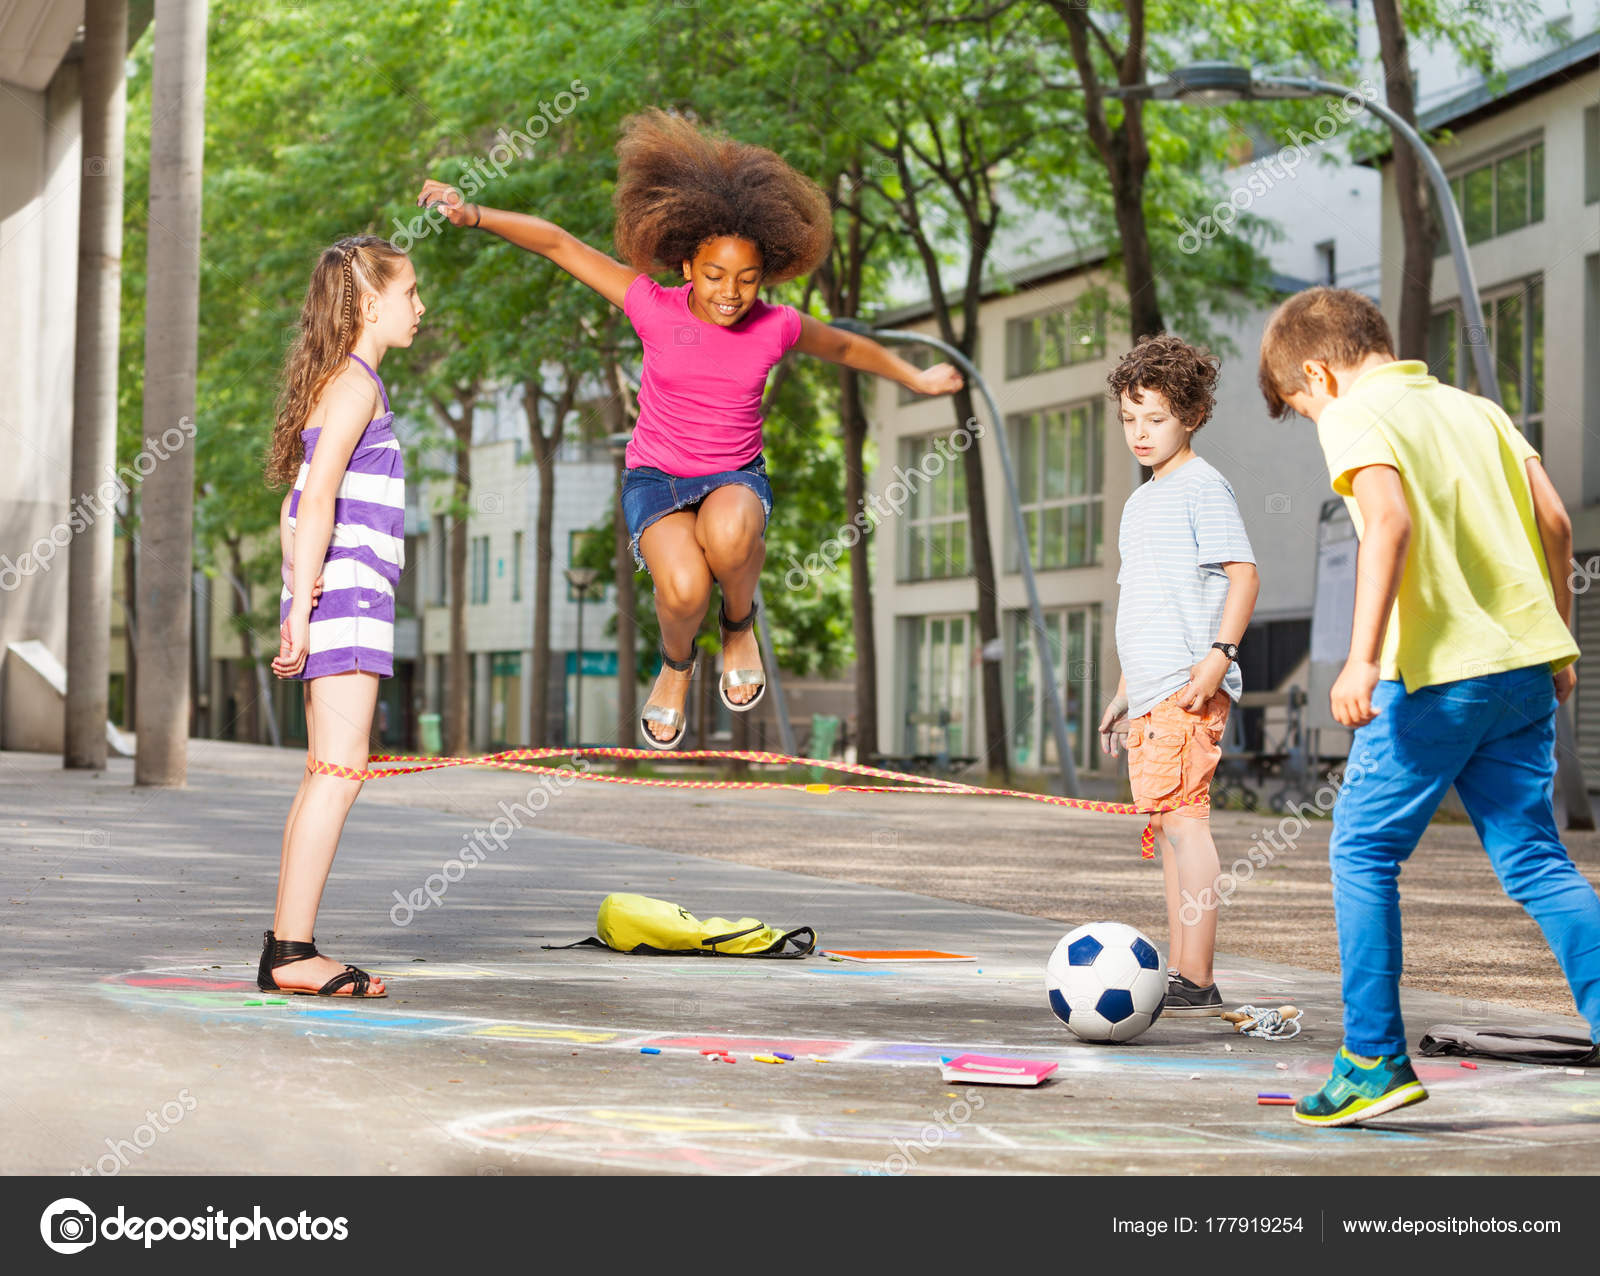 Do you enjoy playing sports. Дети улицы. Ребенок играющий на улице. Дети играют на улице. Игры для детей на улице.